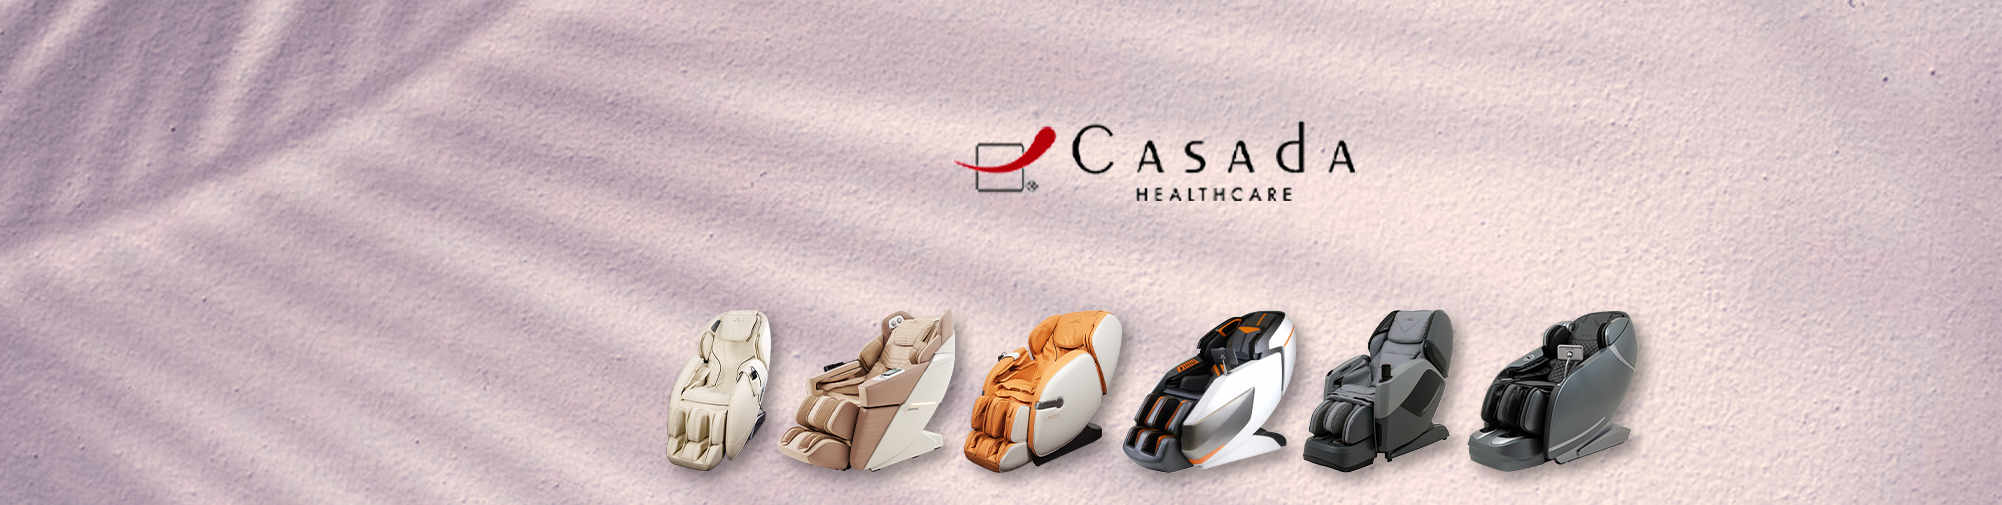 Casada - надійний партнер | Світ масажних крісел